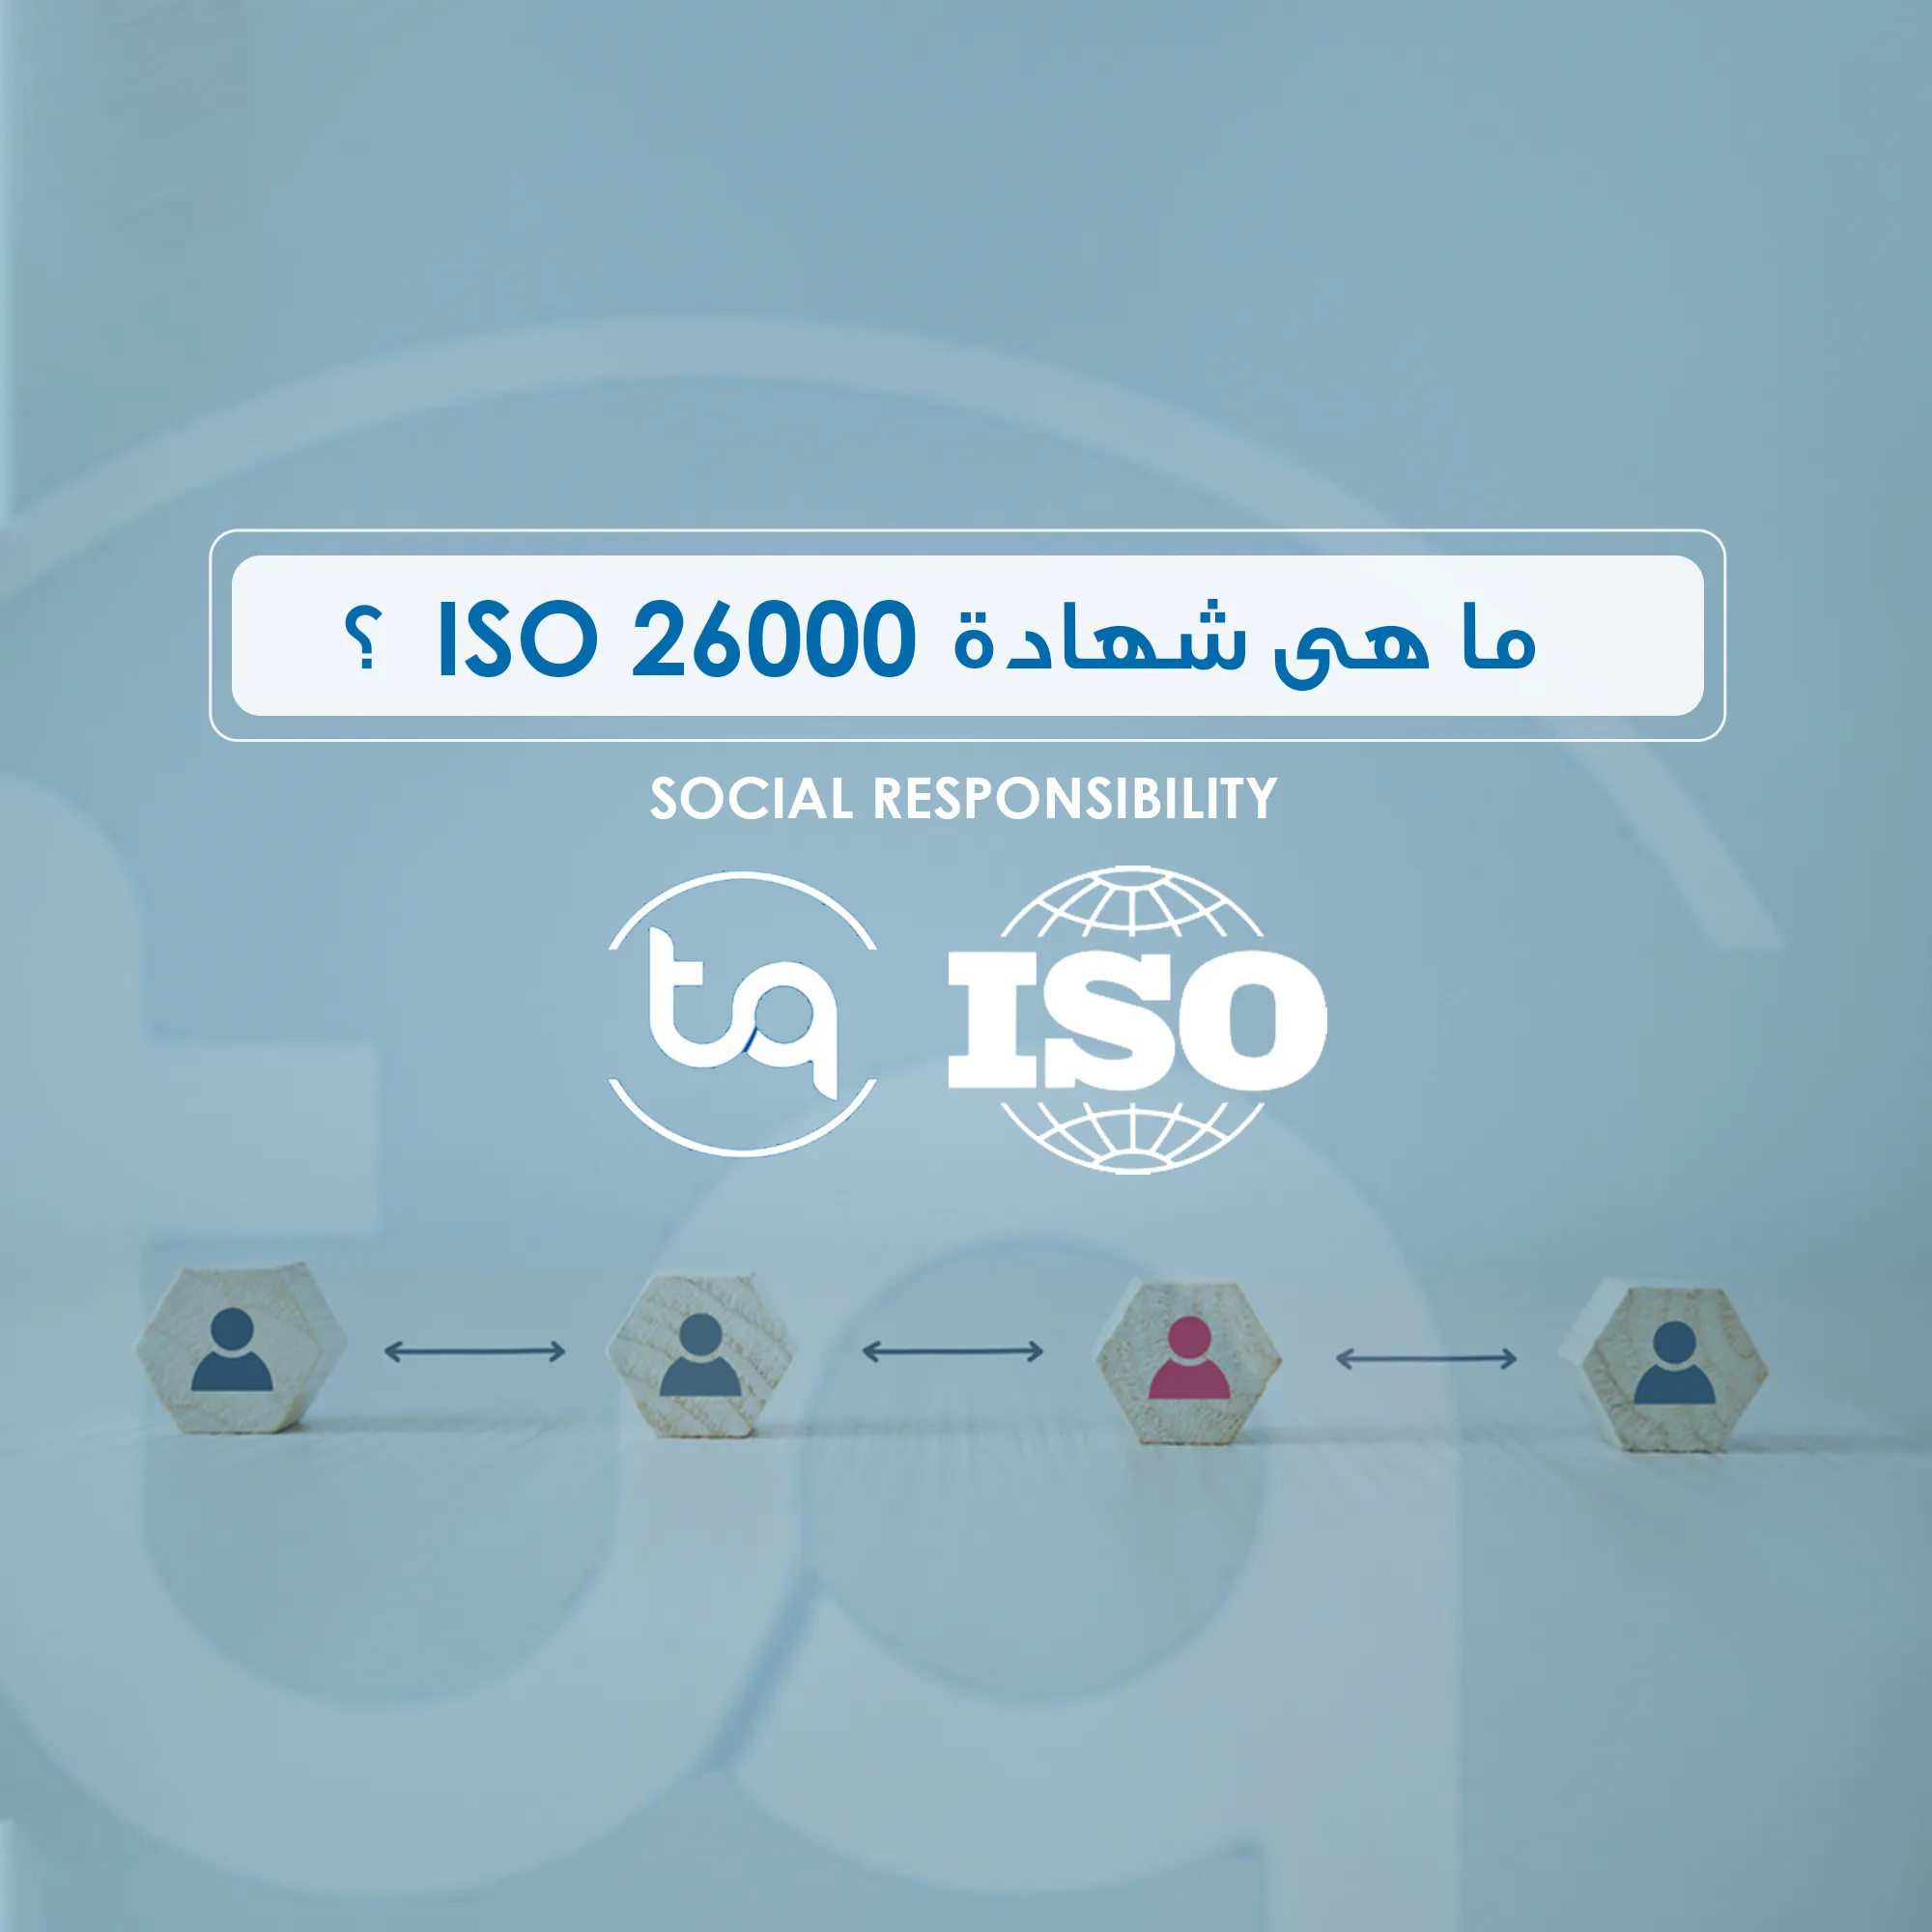 كيفية تطبيق الشركات لمعايير المسؤولية الاجتماعية من خلال شهادة ISO 26000، وفوائدها في تعزيز الثقة والابتكار والاستدامة.